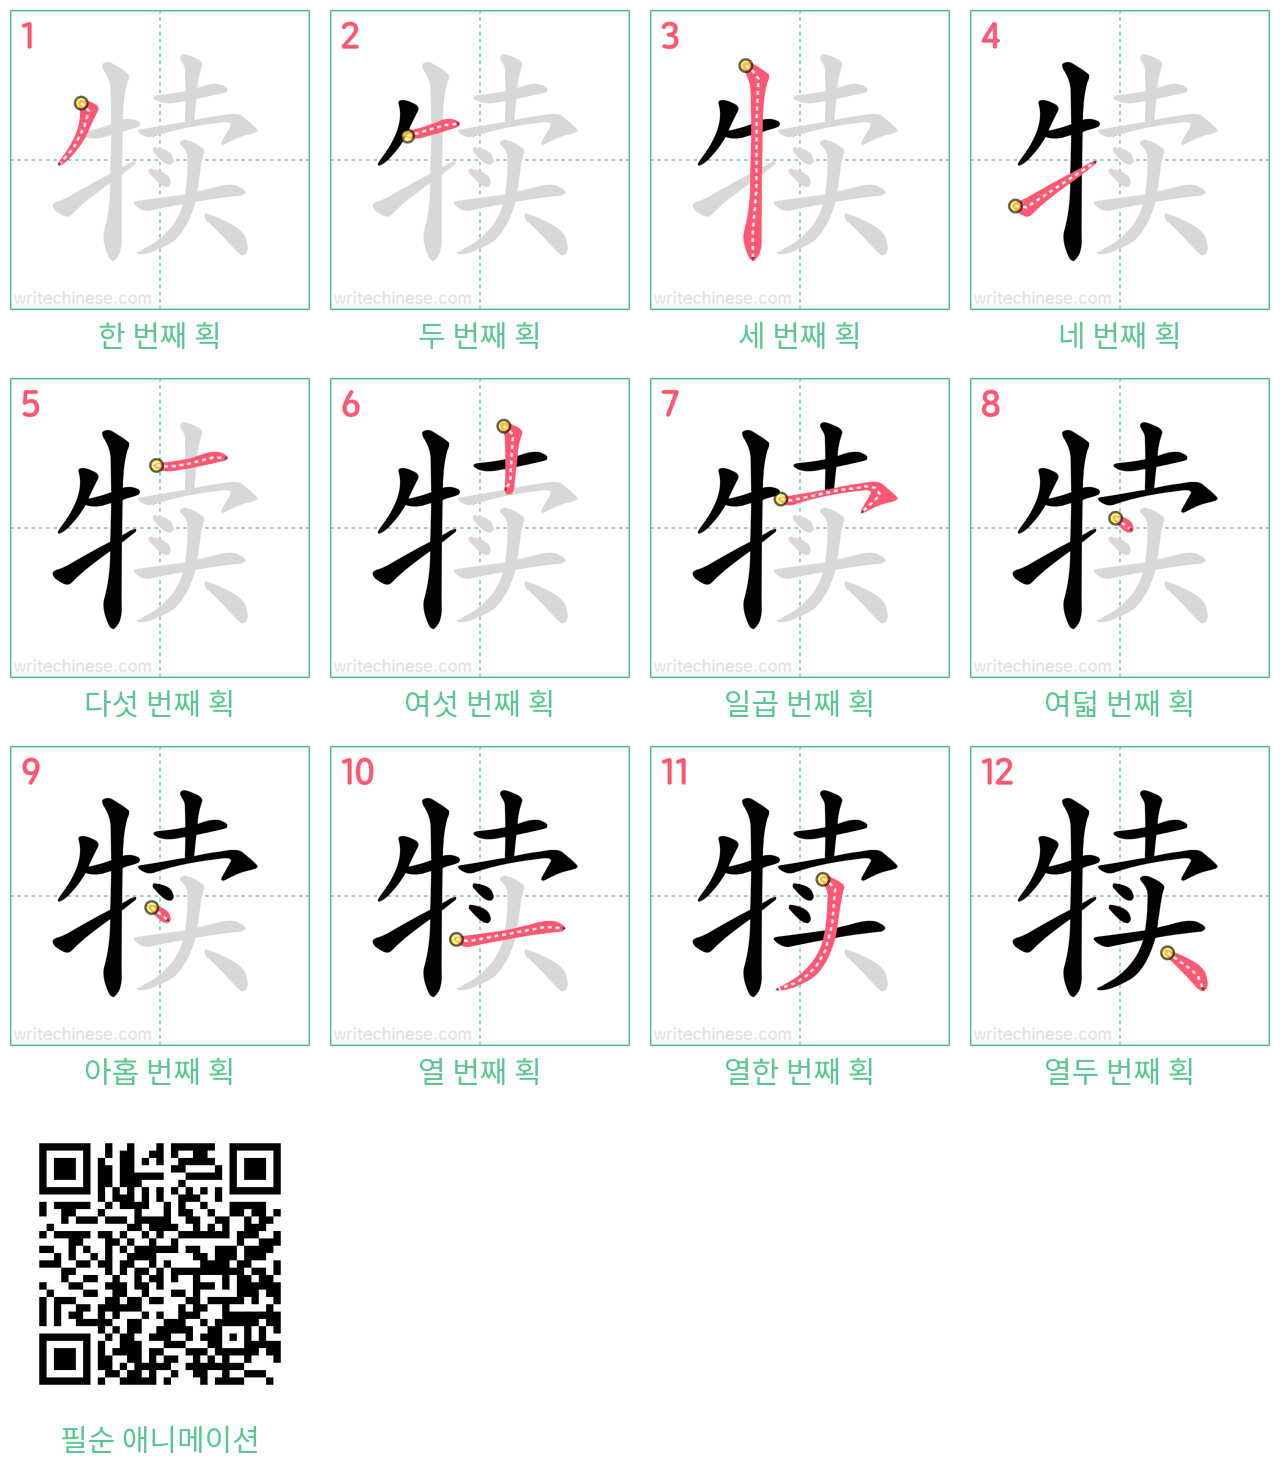 犊 step-by-step stroke order diagrams